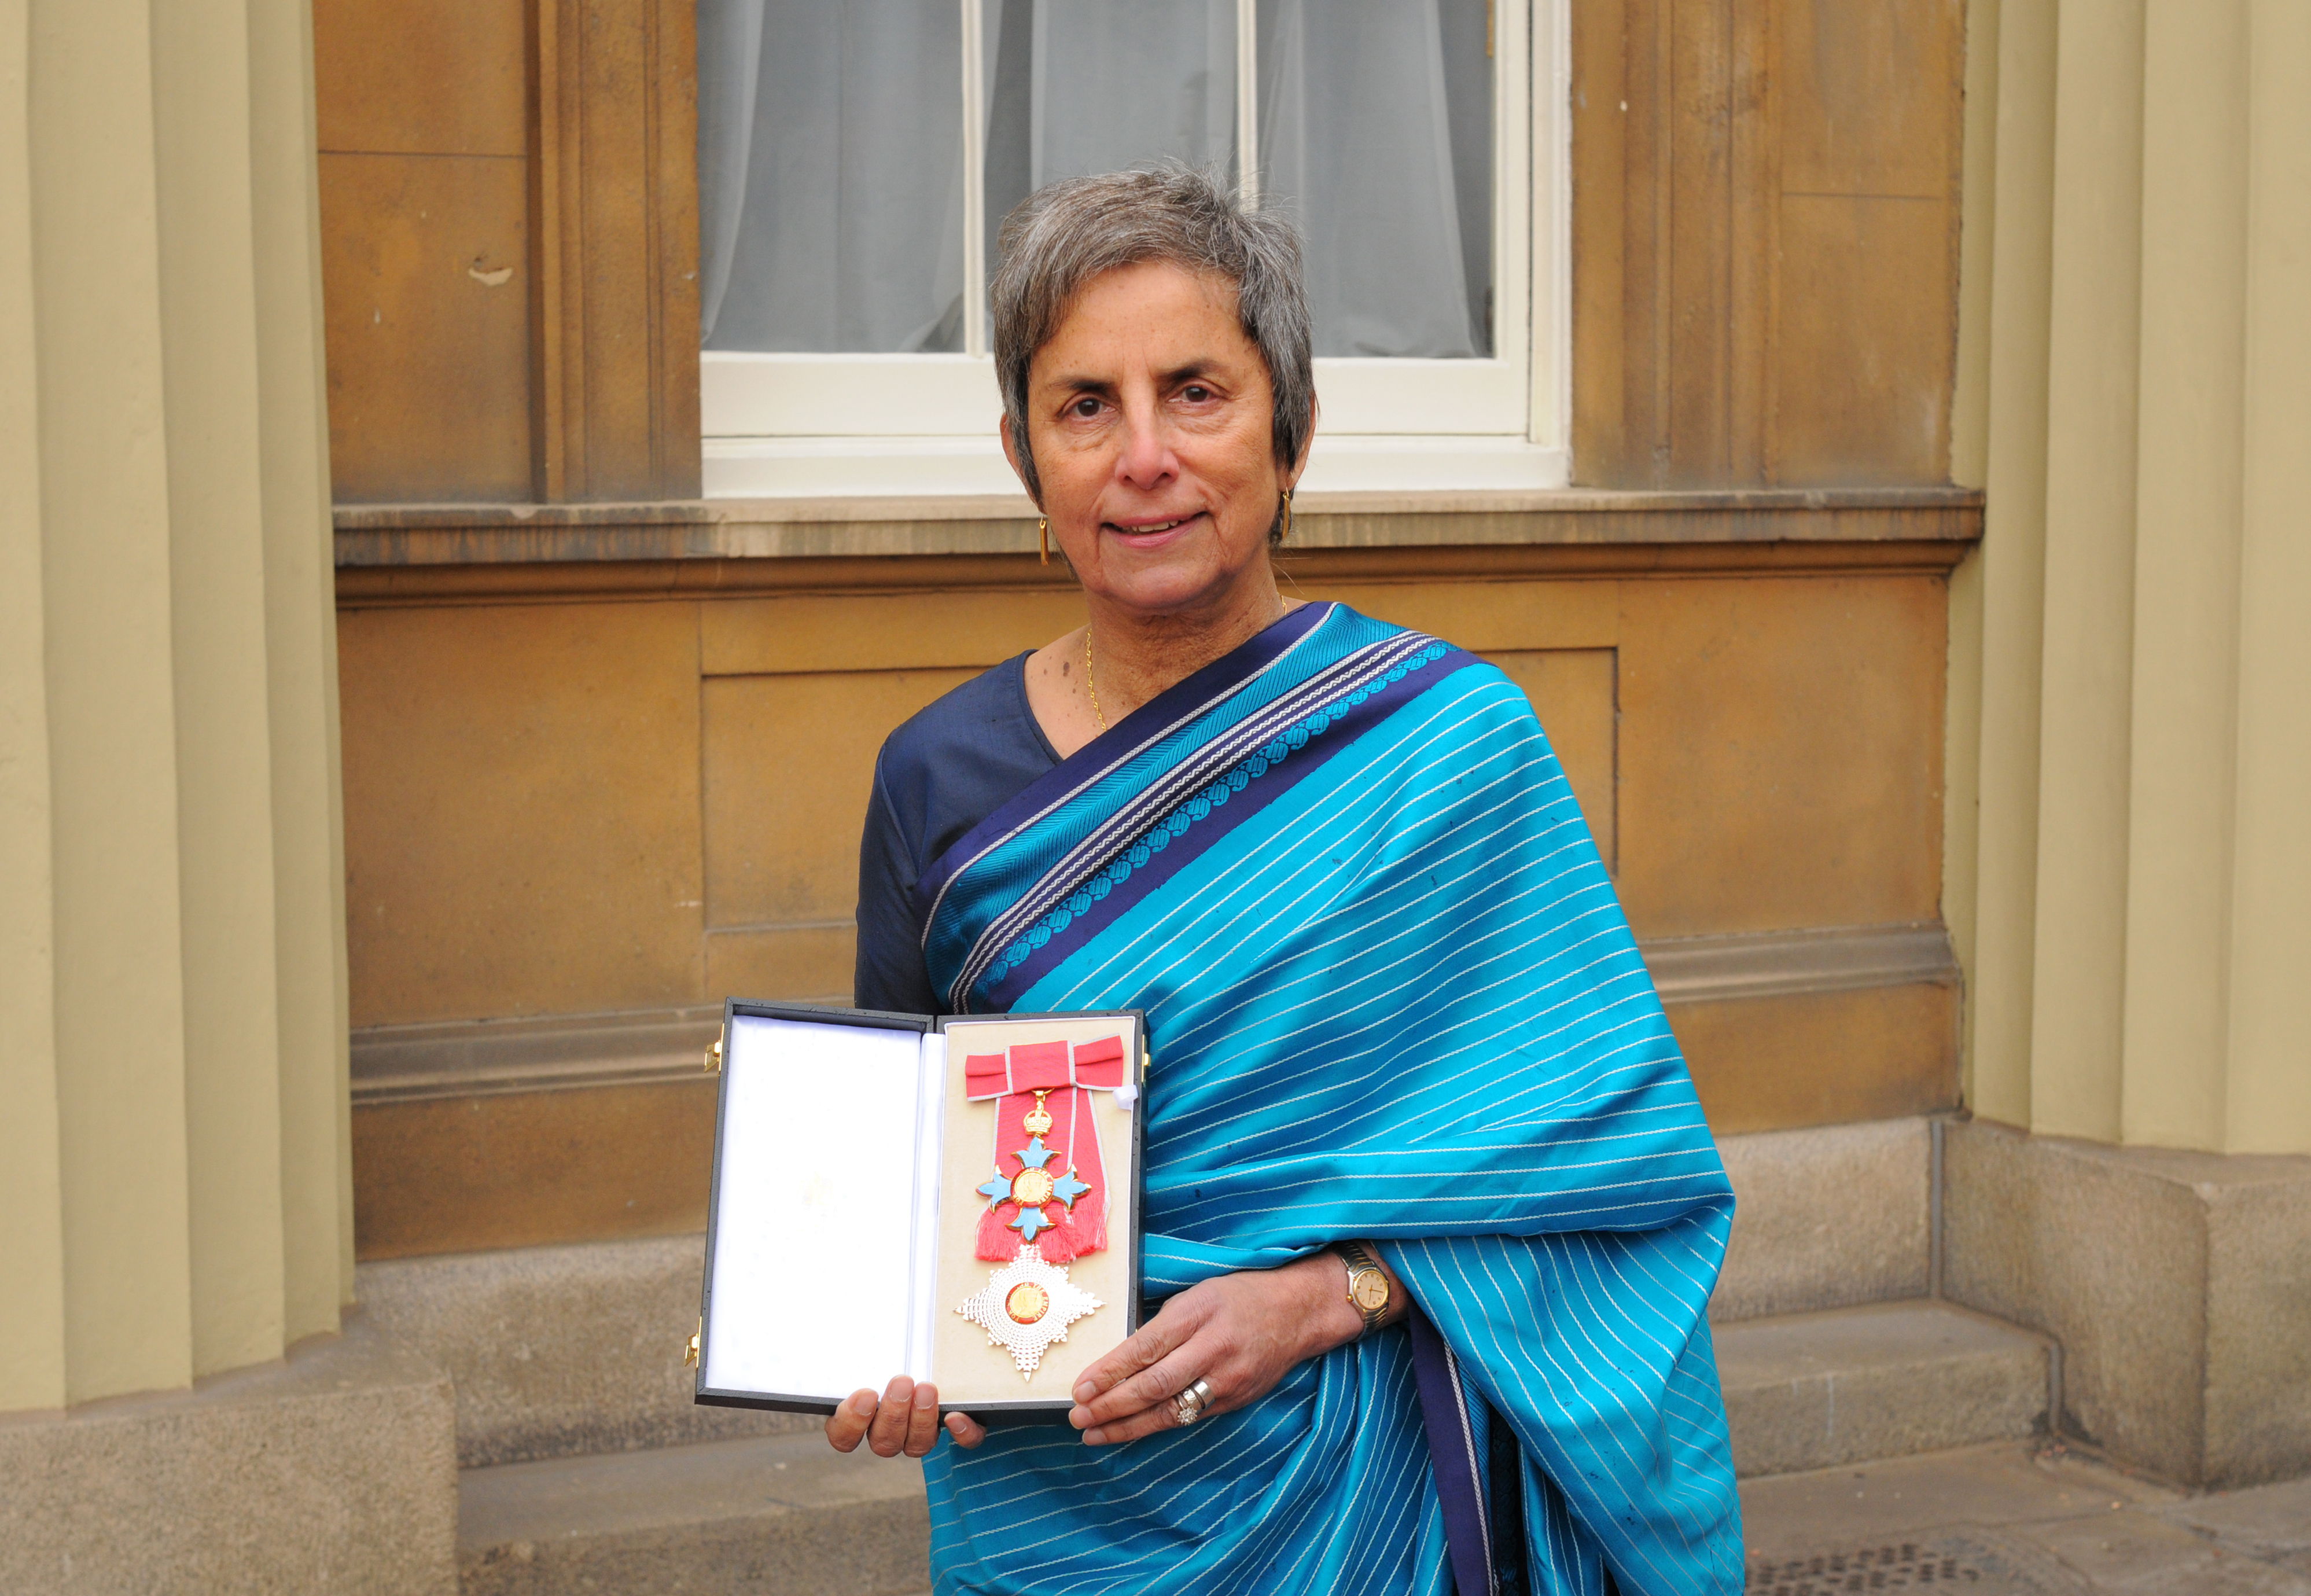 Professor Dame Parveen Kumar